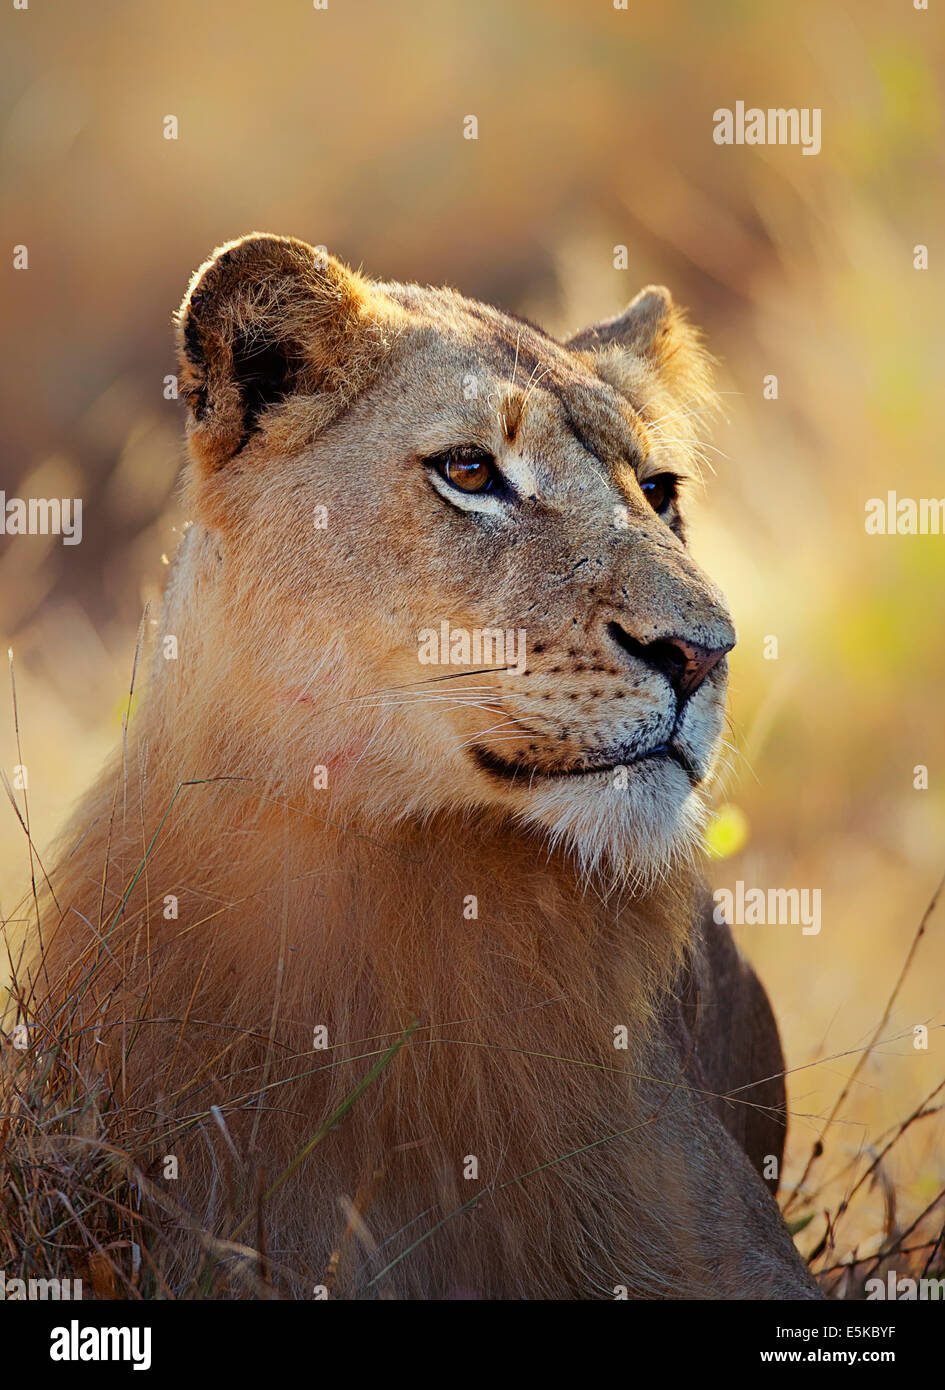 Lioness (Panthera leo) portrait couché dans l'herbe - Kruger National Park (Afrique du Sud) Banque D'Images